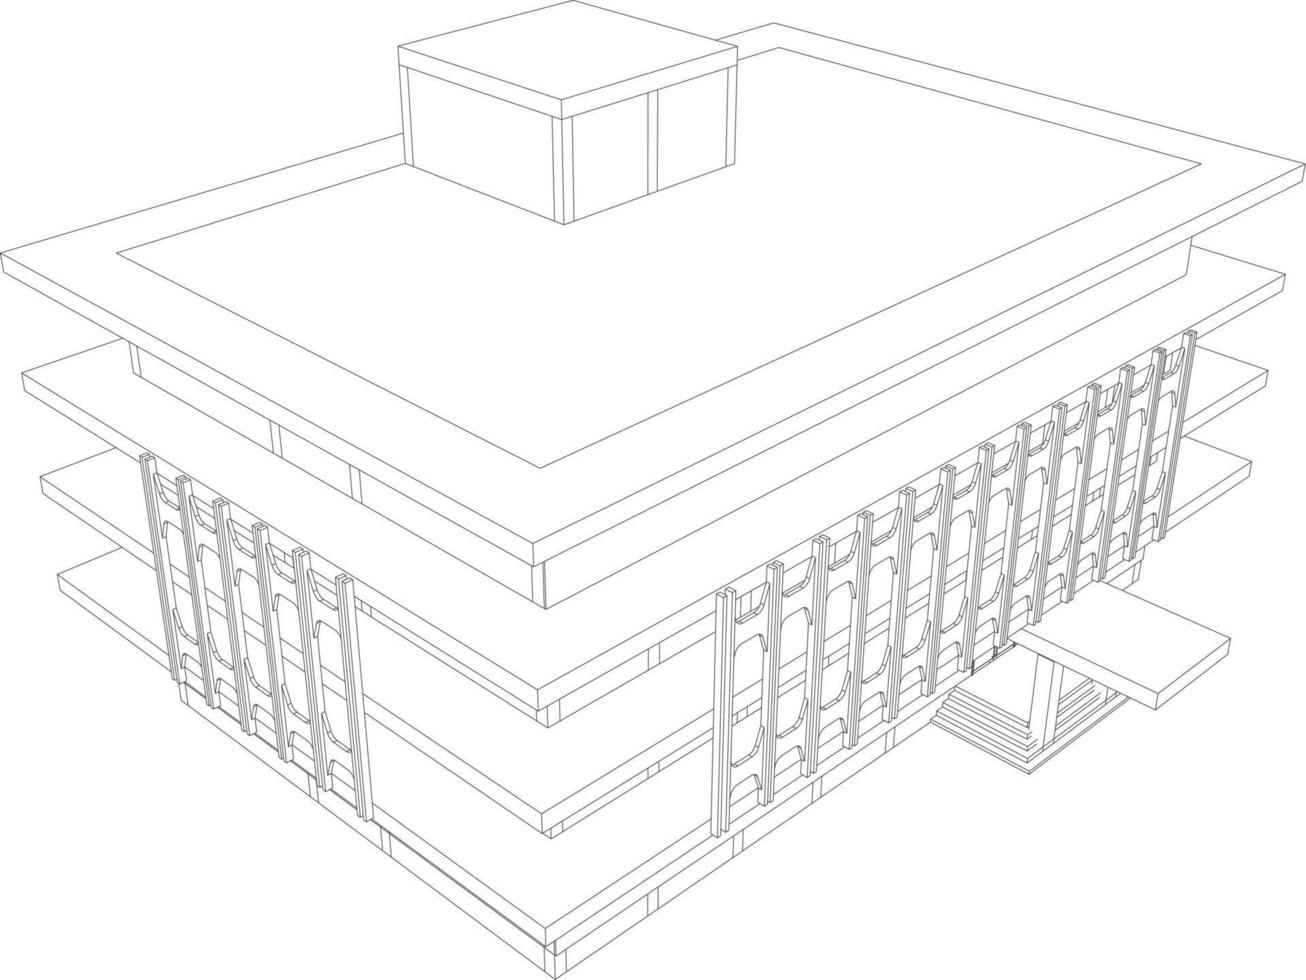 3d illustratie van gebouw project vector